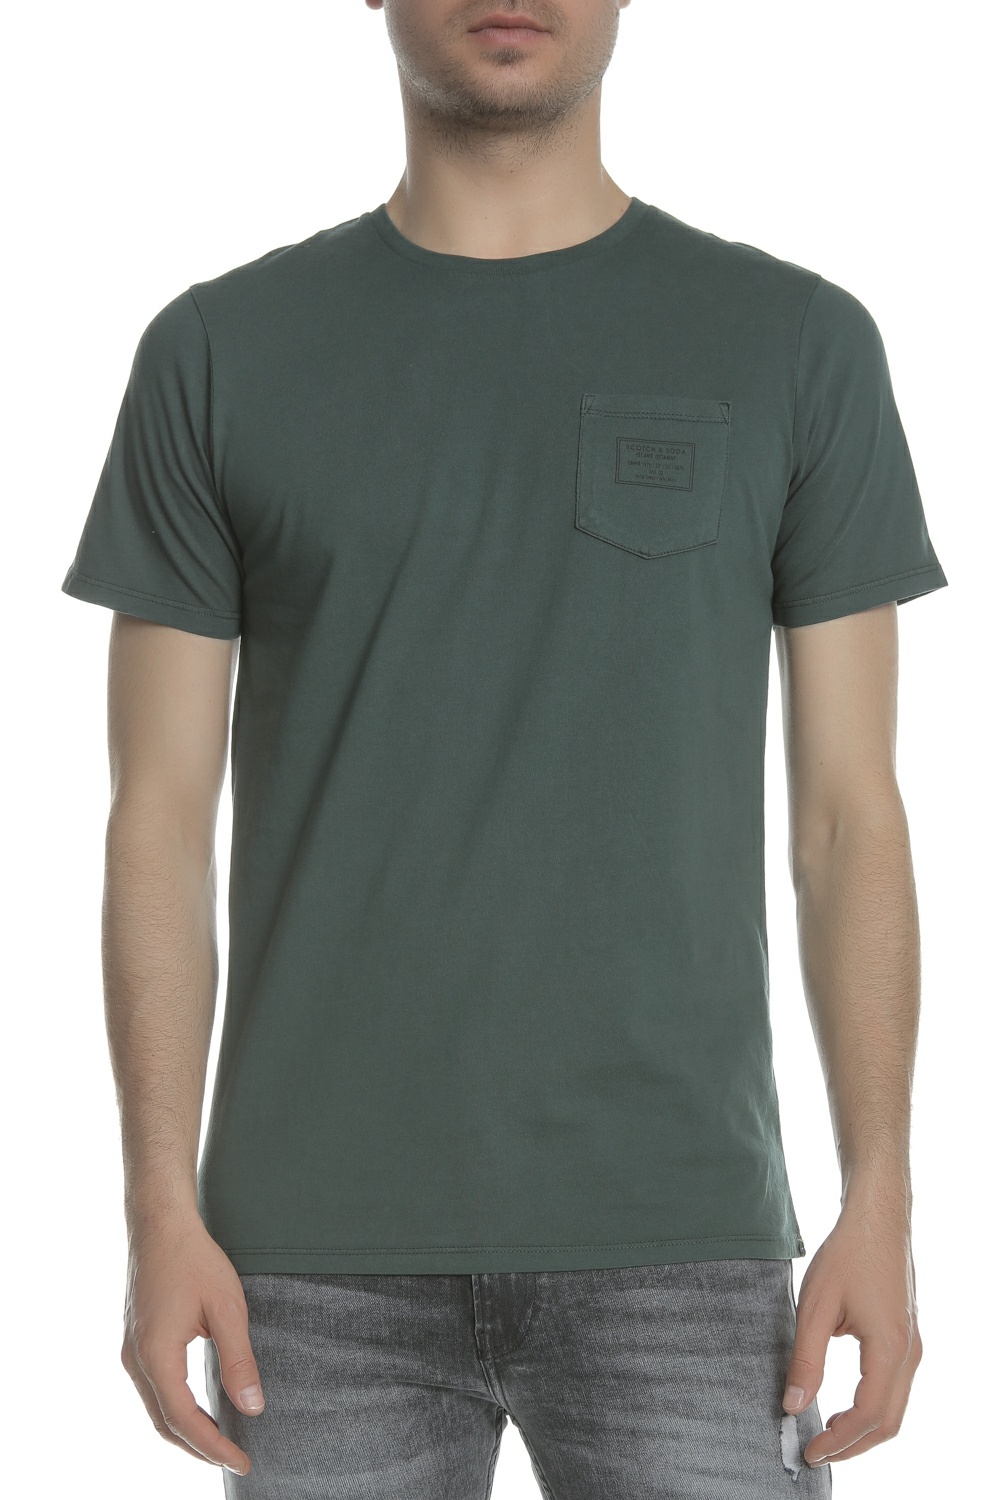 Ανδρικά/Ρούχα/Μπλούζες/Κοντομάνικες SCOTCH & SODA - Ανδρική μπλούζα SCOTCH & SODA πράσινη